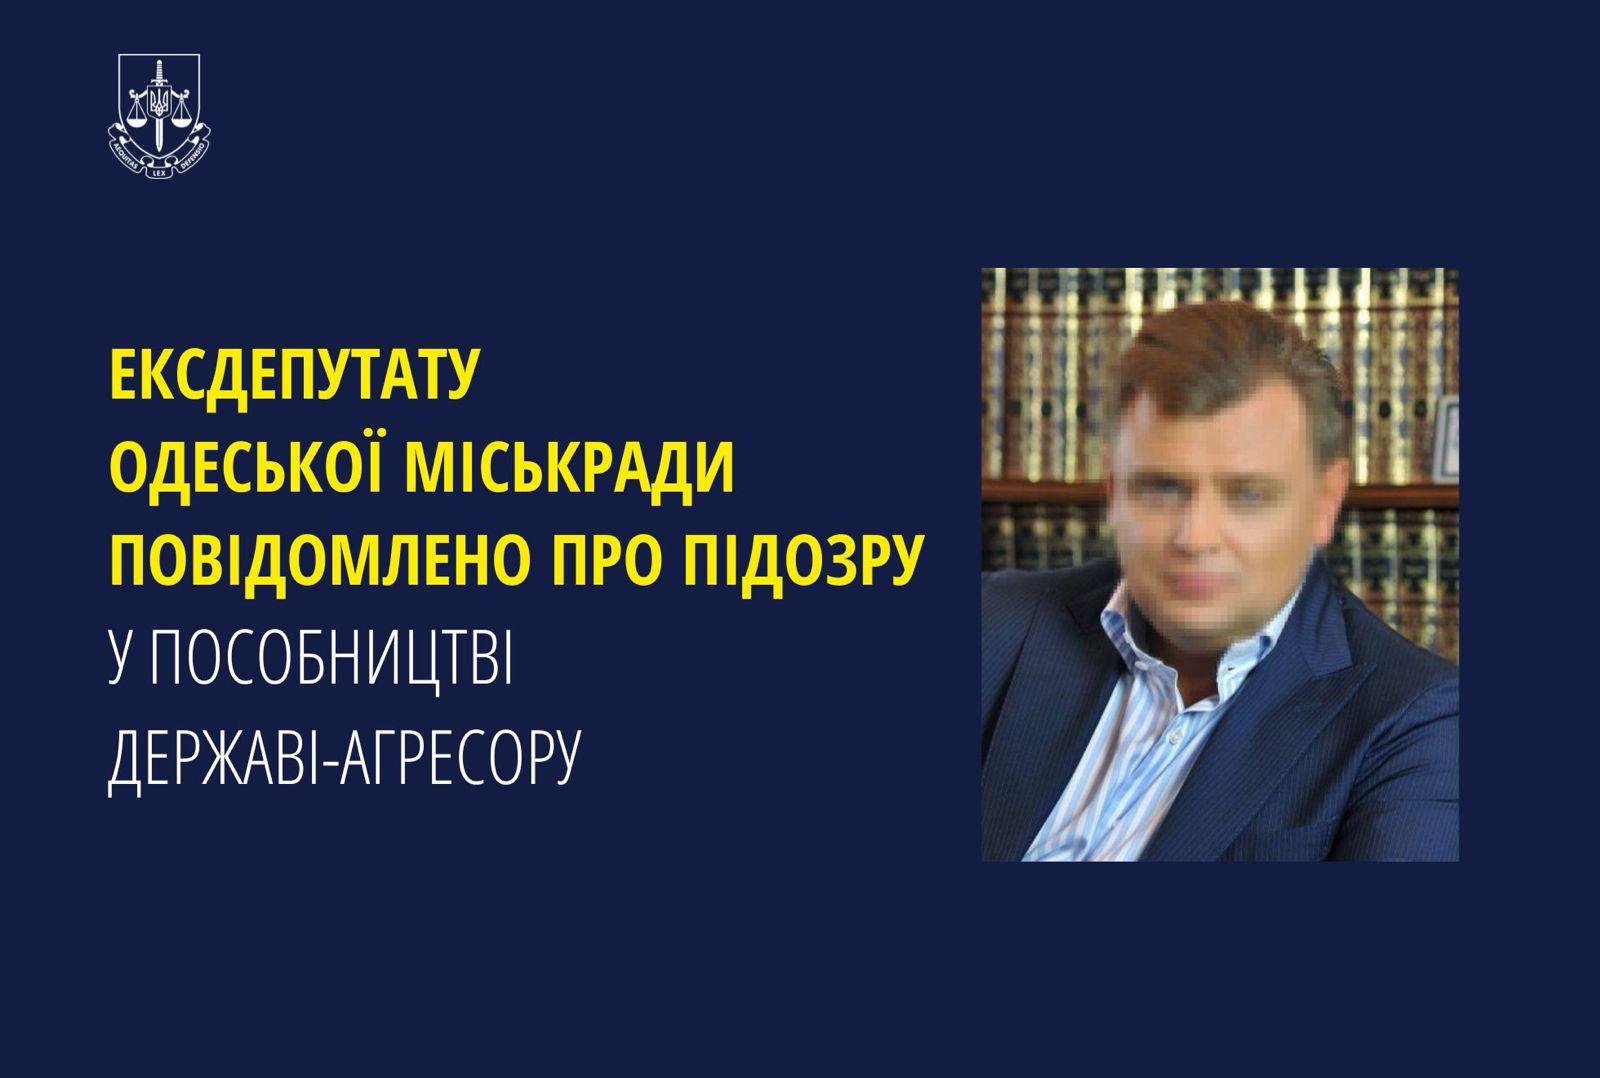 Ексдепутату Одеської міськради повідомлено про підозру у пособництві державі-агресору